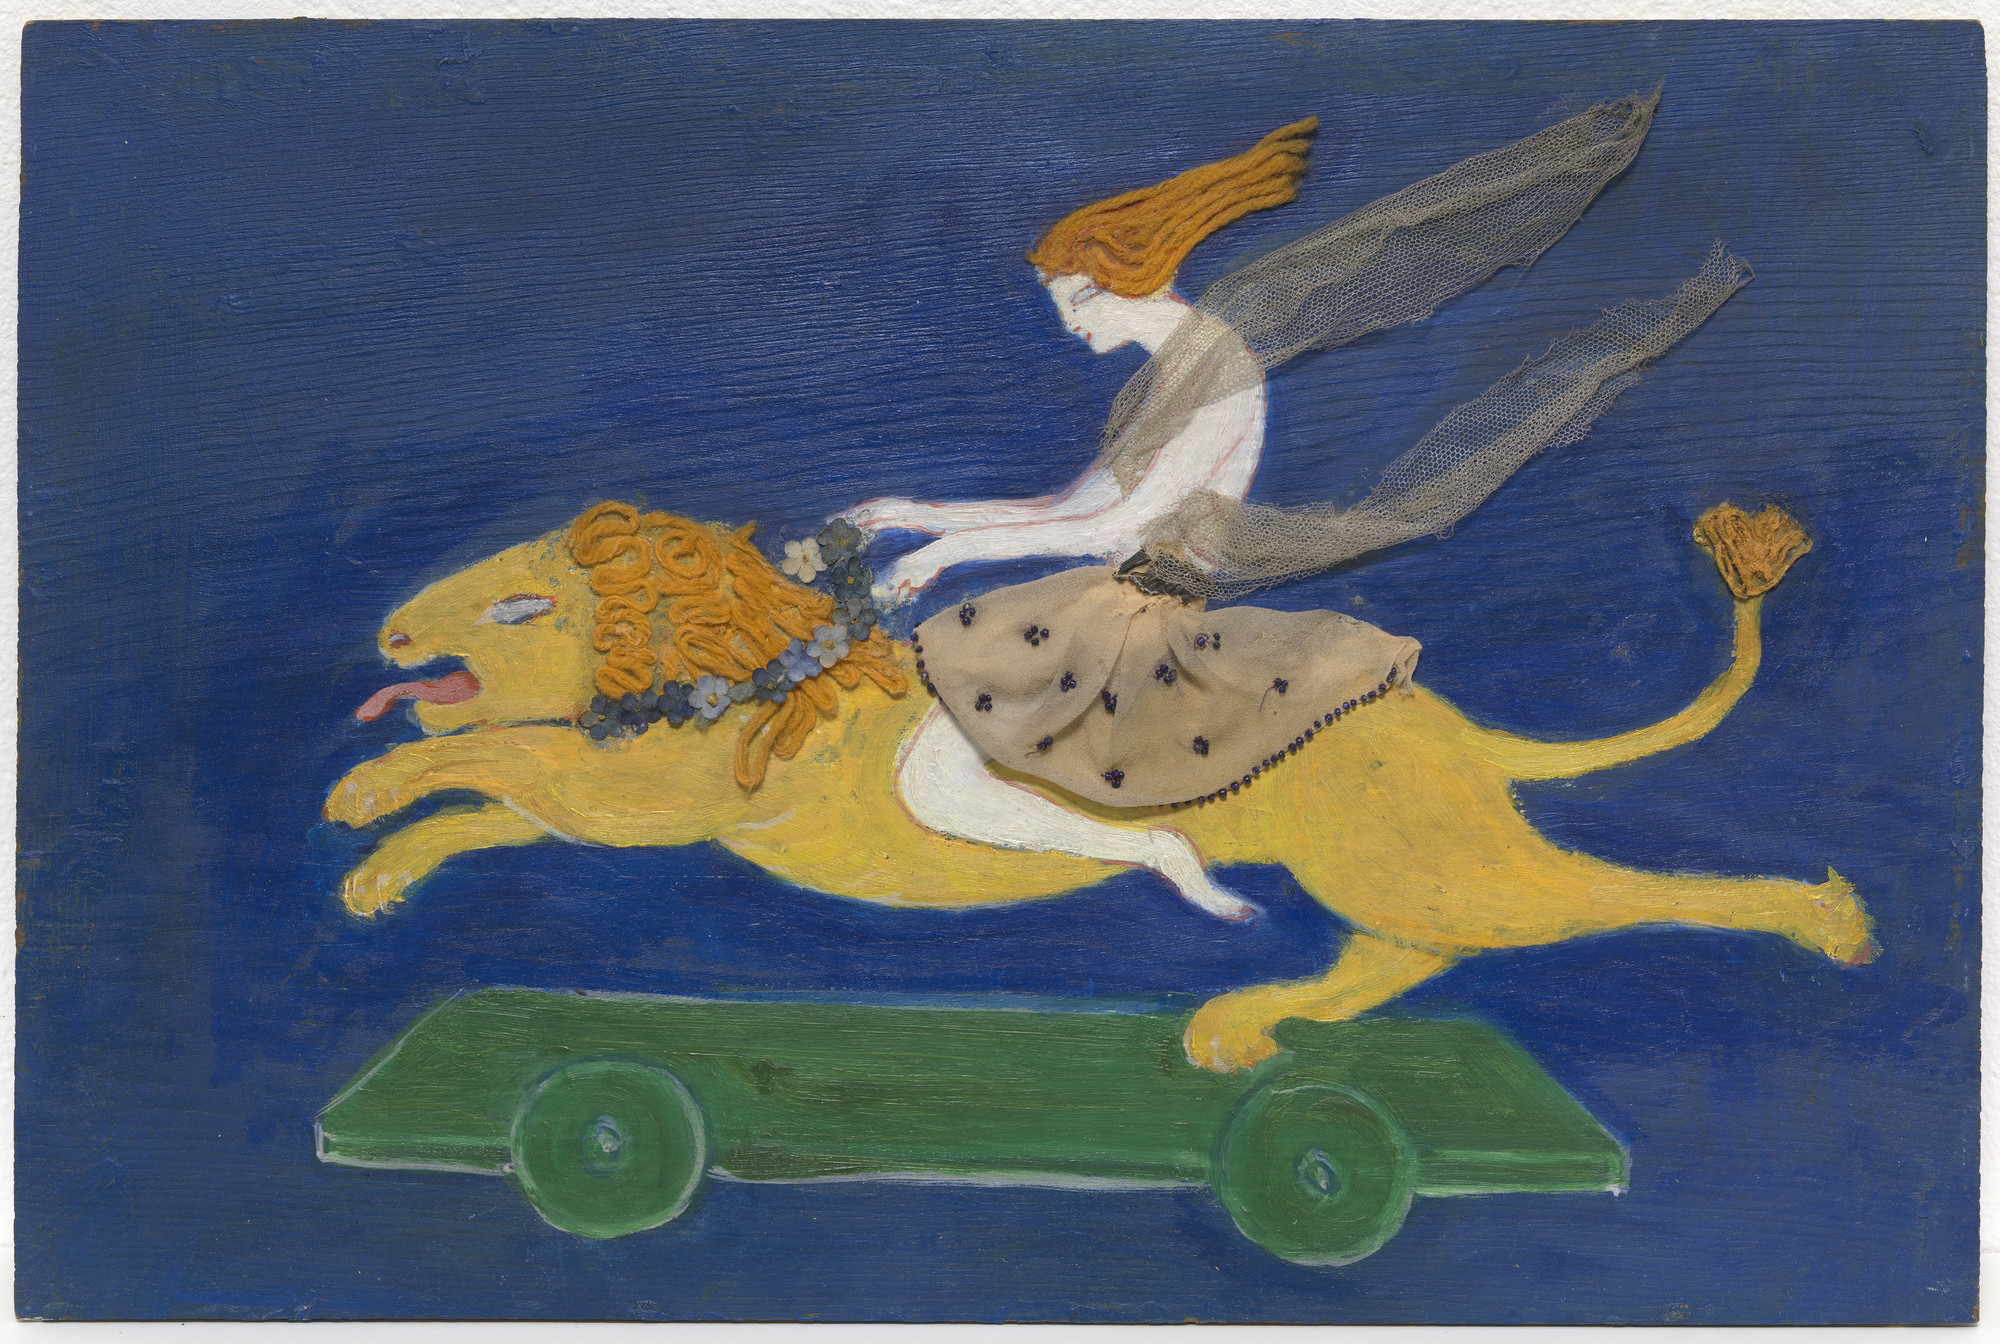 의상 디자인(안드로클레스와 사자) (Costume design (Androcles and the Lion)) by Florine Stettheimer - 1912년경 - 30.2 x 45.4 cm 